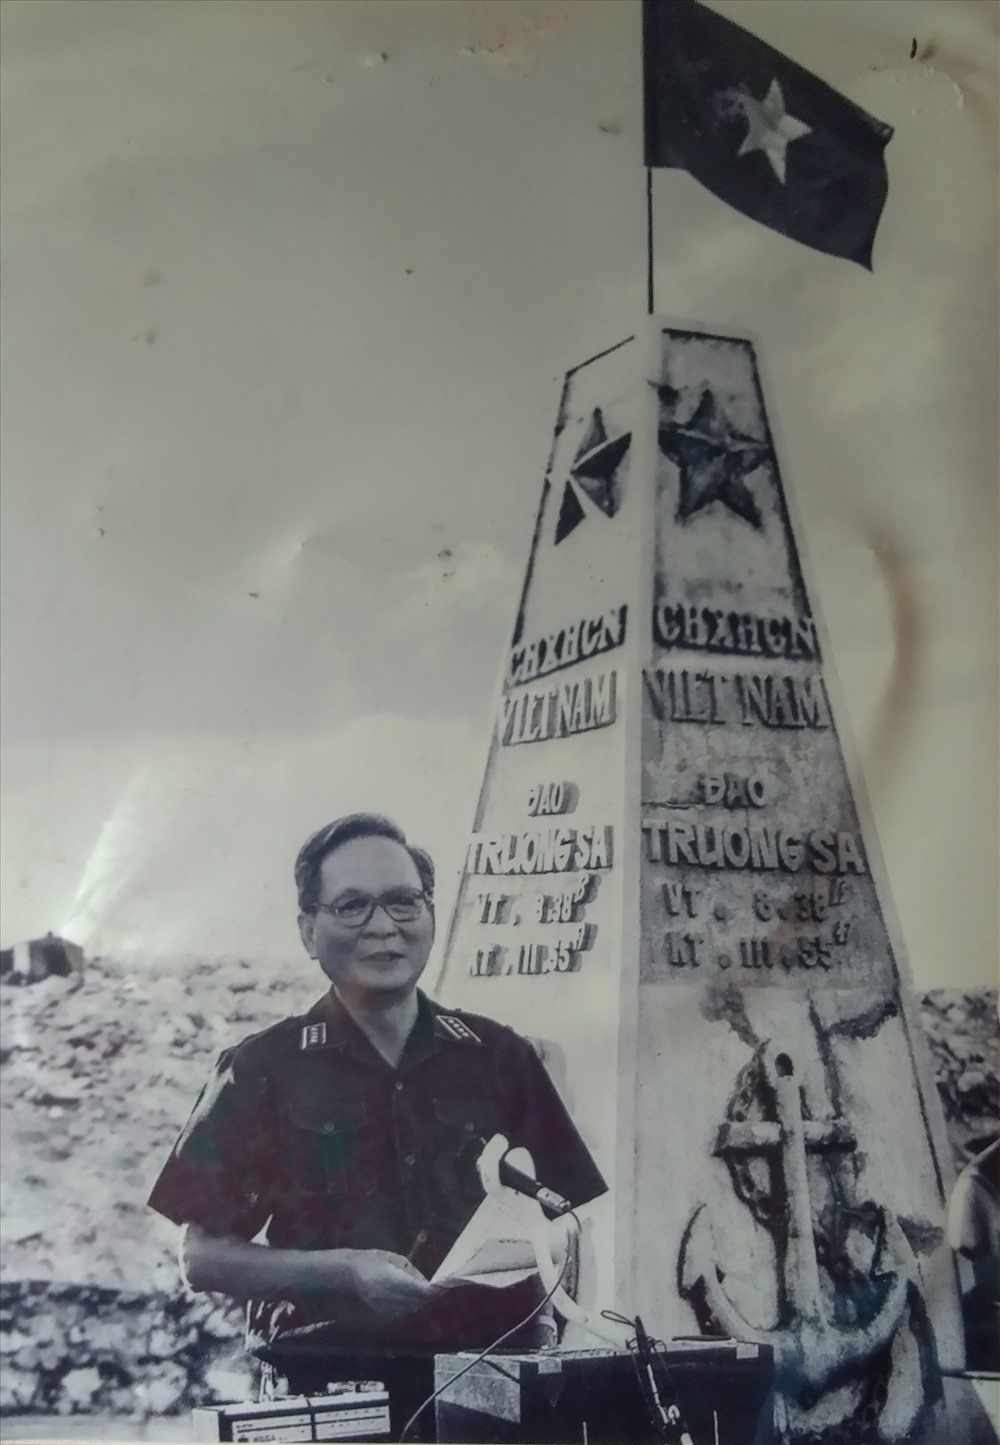 Đại tướng Lê Đức Anh tại đảo Trường Sa lớn (quần đảo Trường Sa) ngày 7-5-1988 dịp kỷ niệm 33 năm ngày thành lập Hải quân nhân dân Việt Nam. Ảnh: ST.